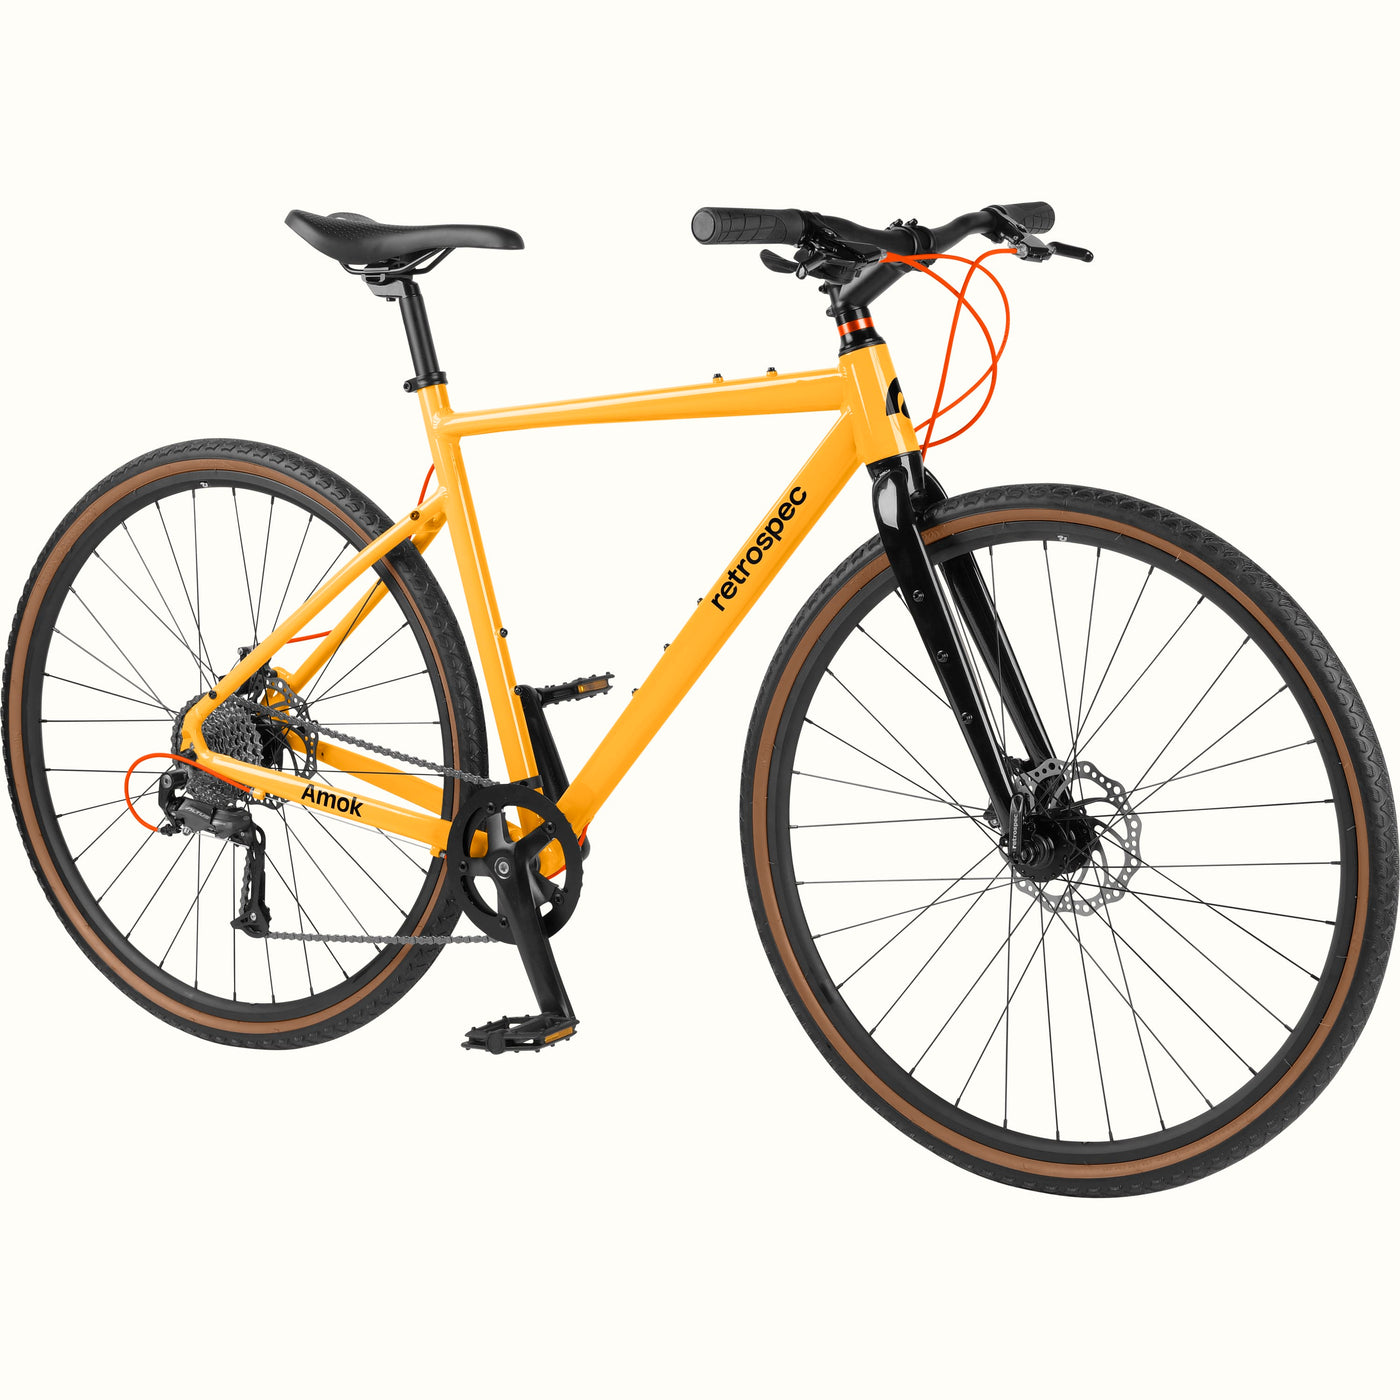 Amok Gravel Adventure Bike - 8 Speed | Saffron